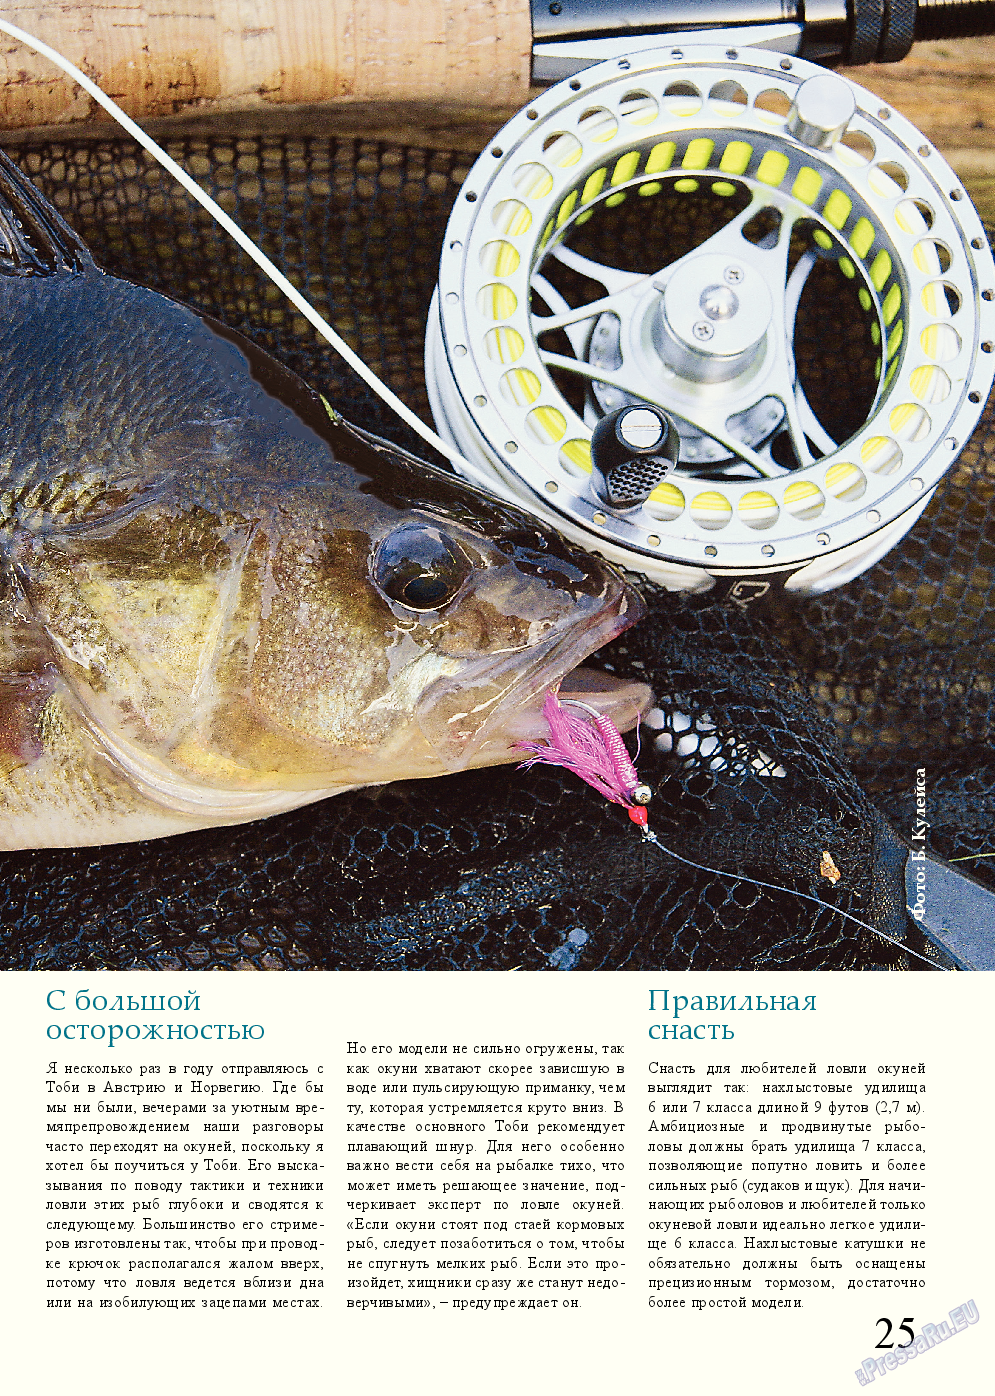 Рыбалка Plus, журнал. 2014 №11 стр.25